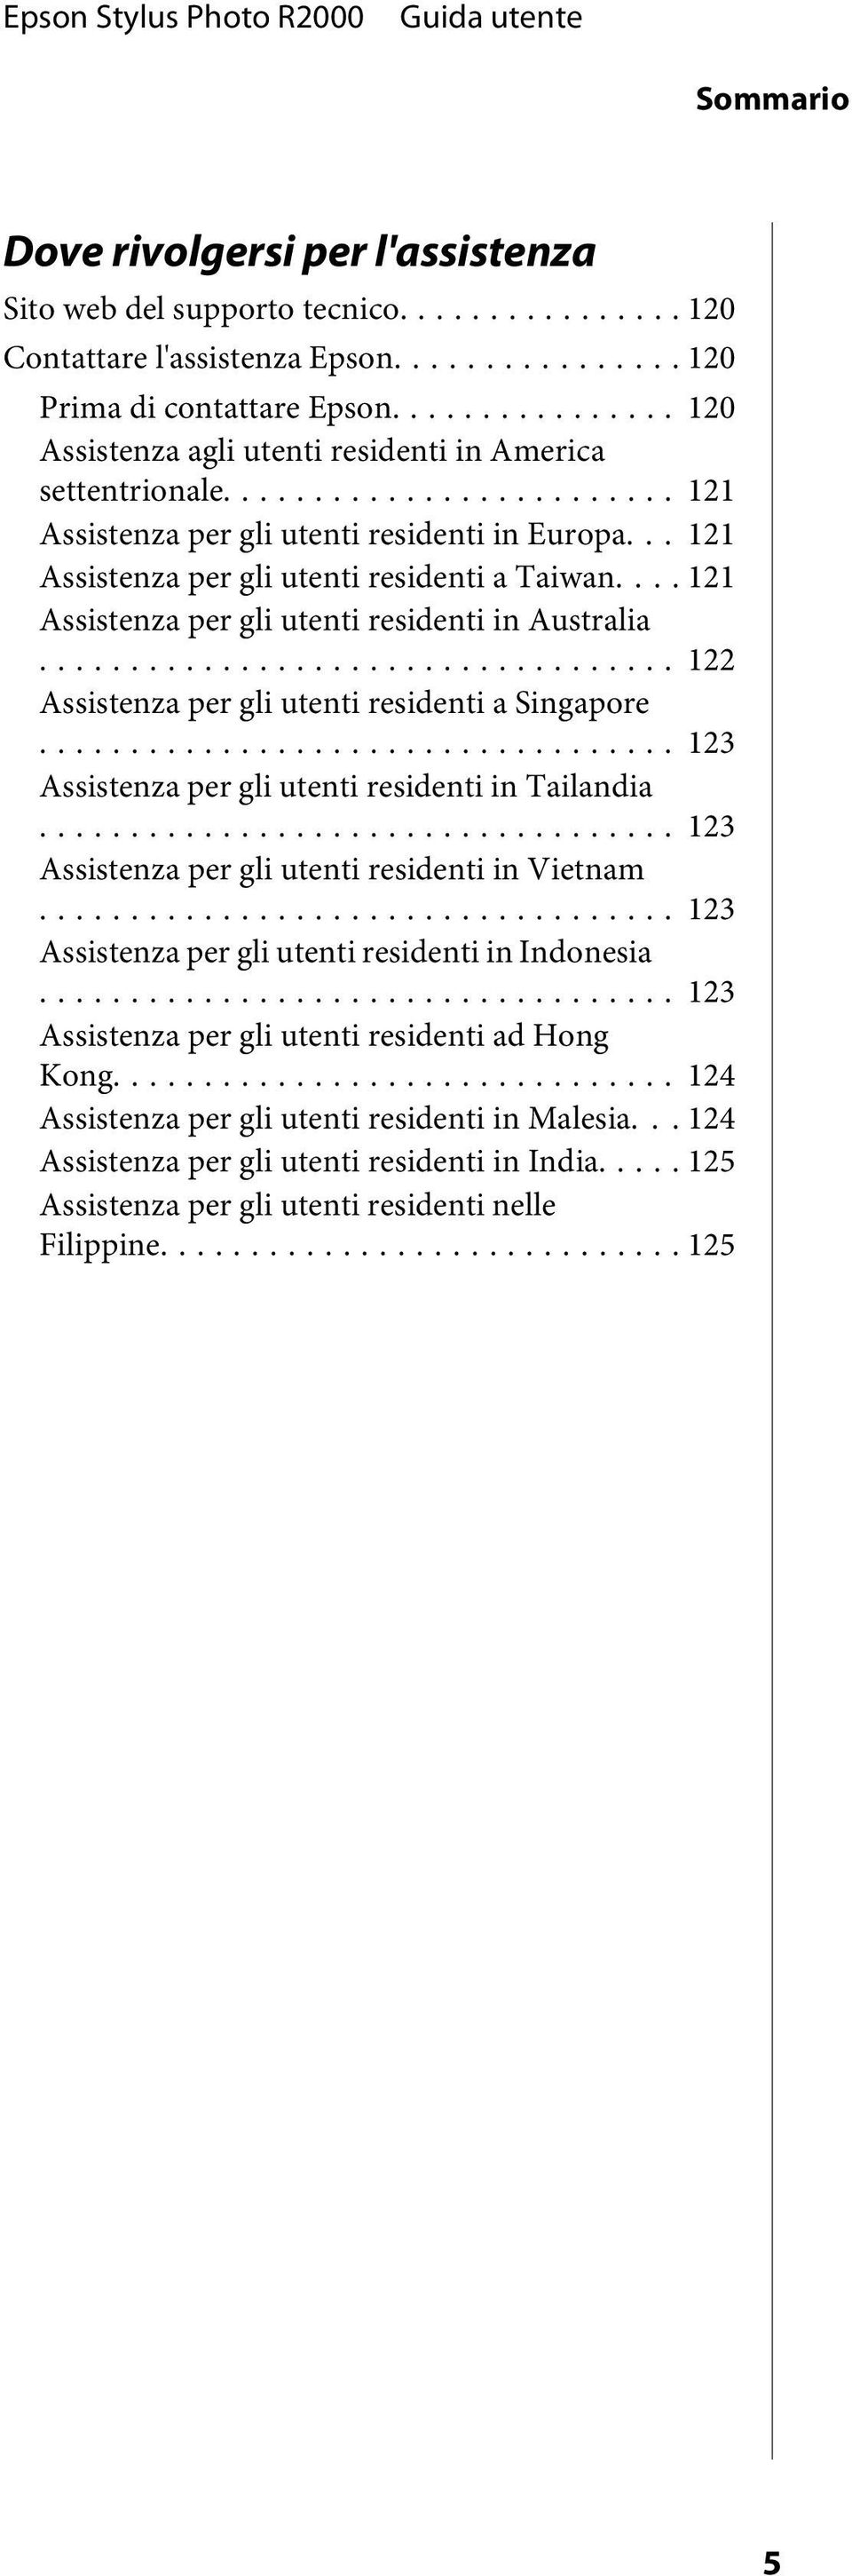 .. 121 Assistenza per gli utenti residenti in Australia... 122 Assistenza per gli utenti residenti a Singapore... 123 Assistenza per gli utenti residenti in Tailandia.